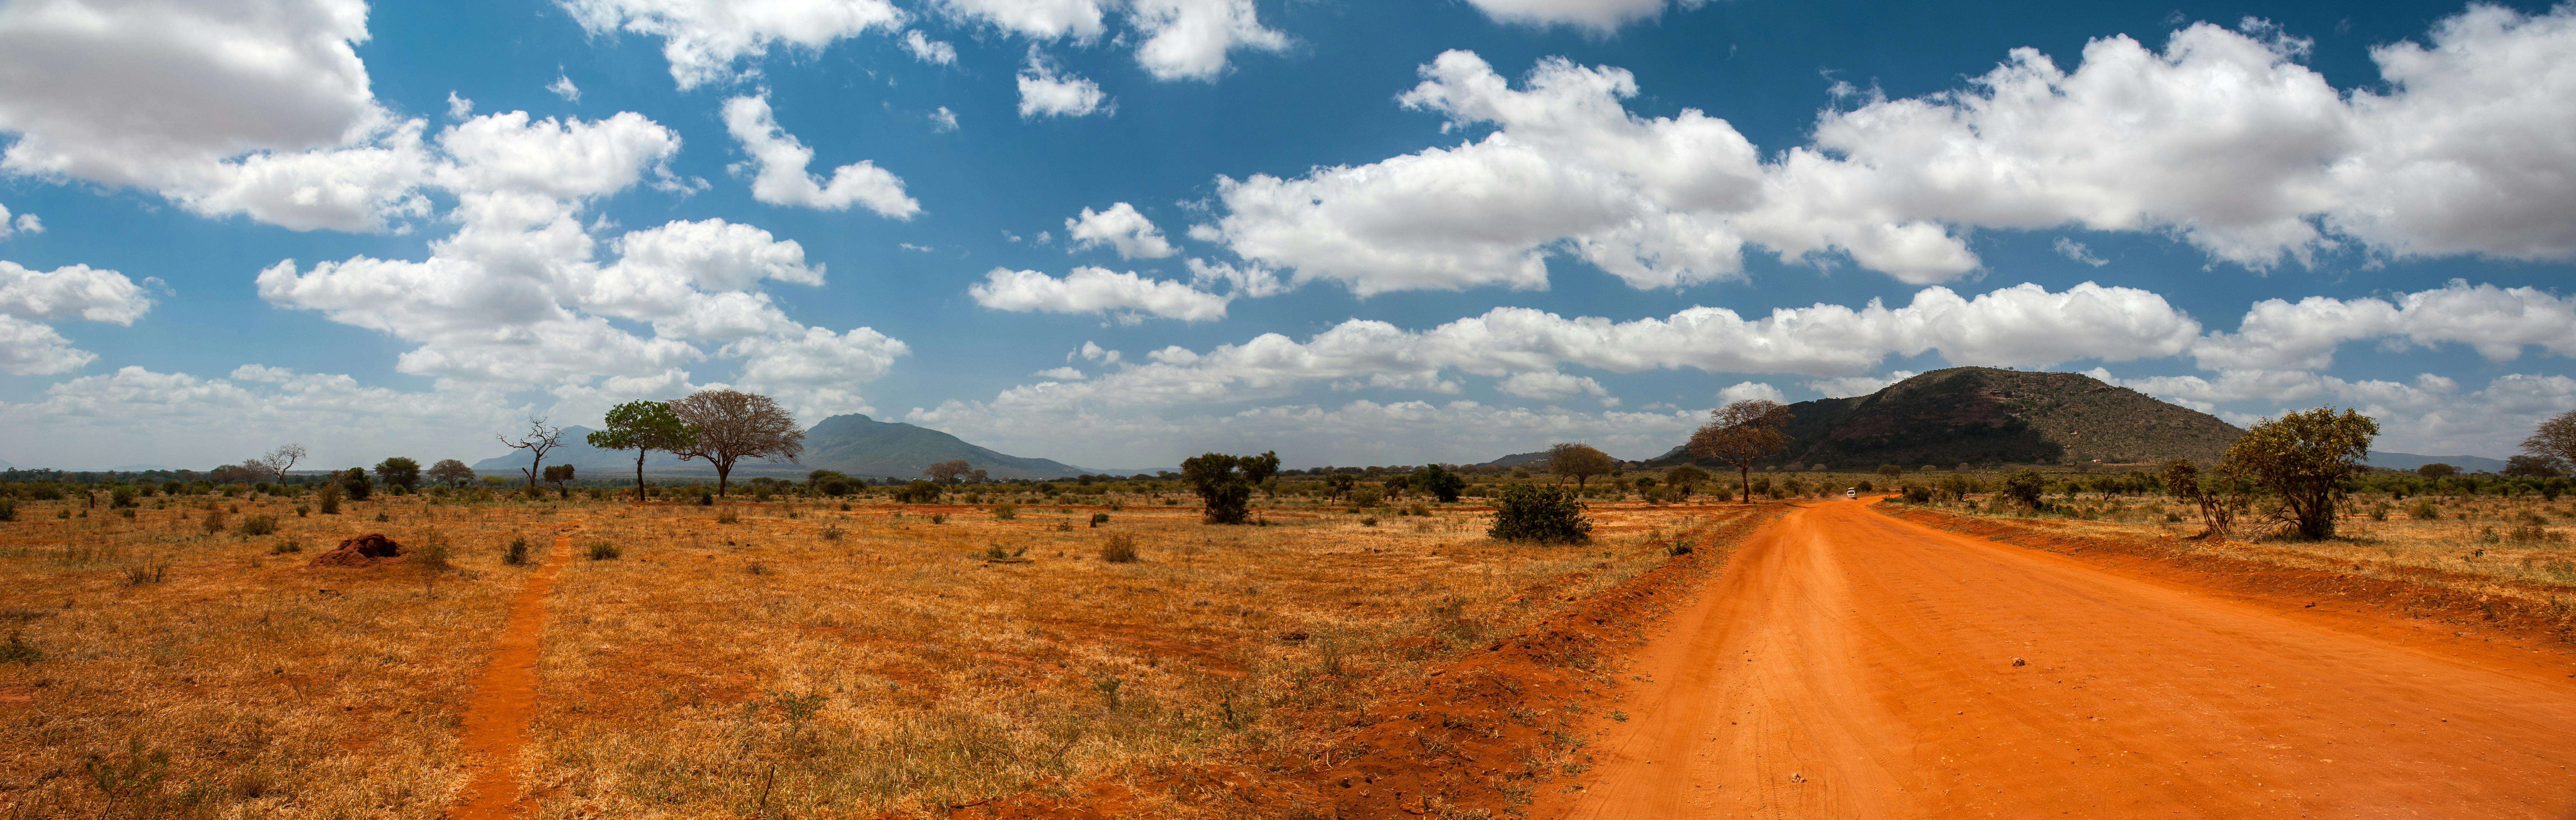 Kenya National Parks and Reserves